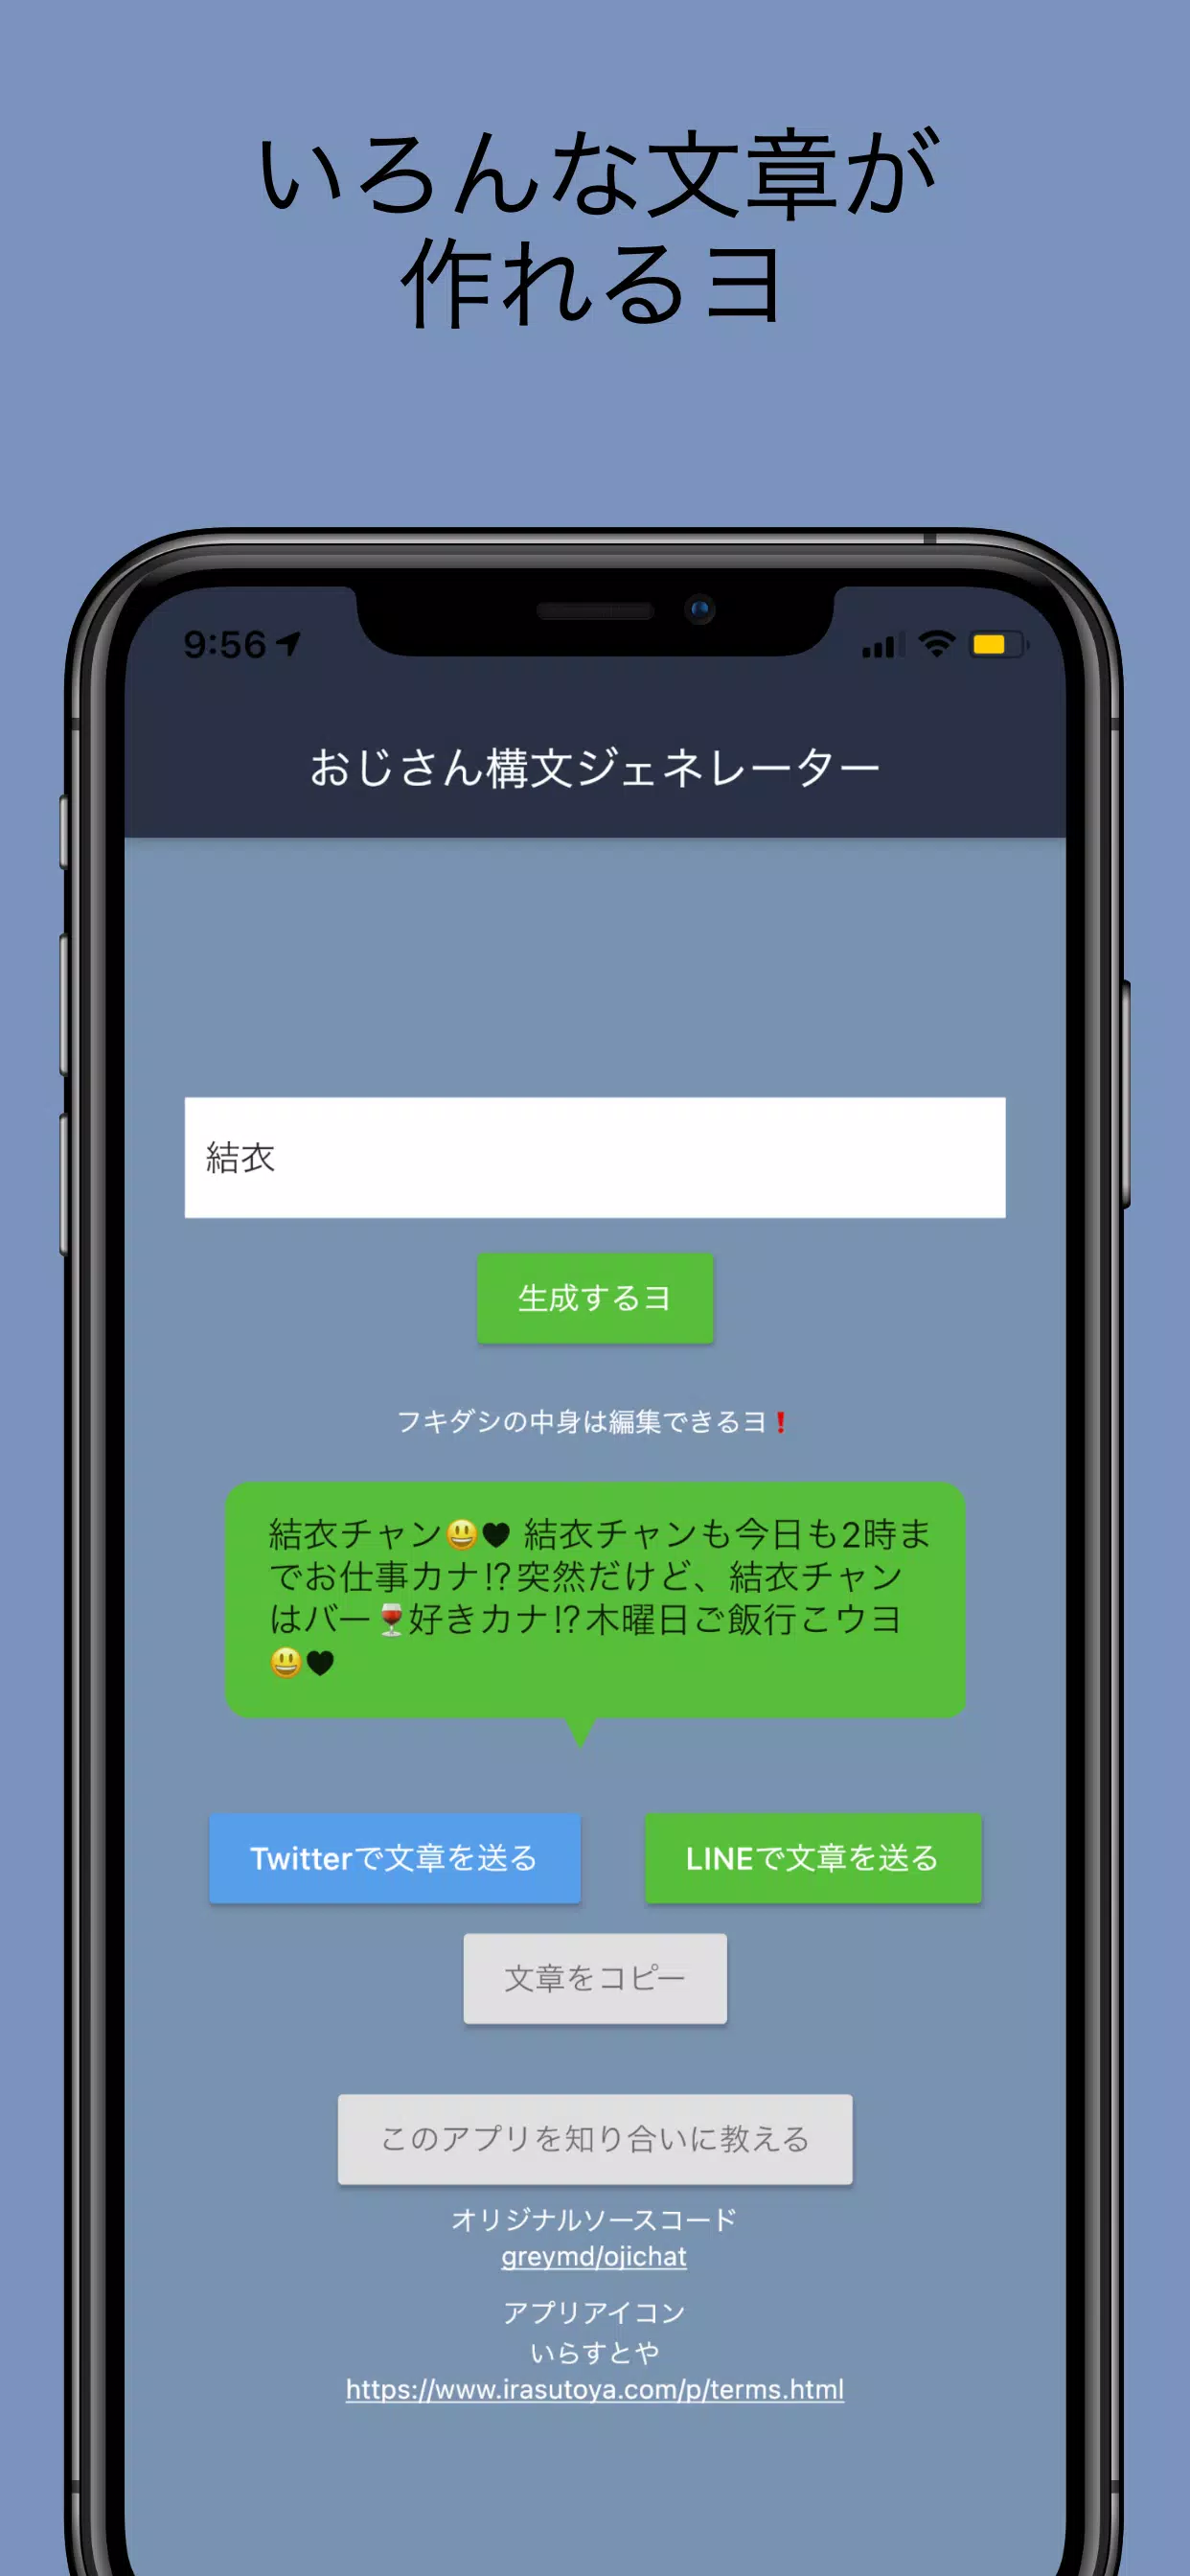 おじさん構文ジェネレーター For Android Apk Download